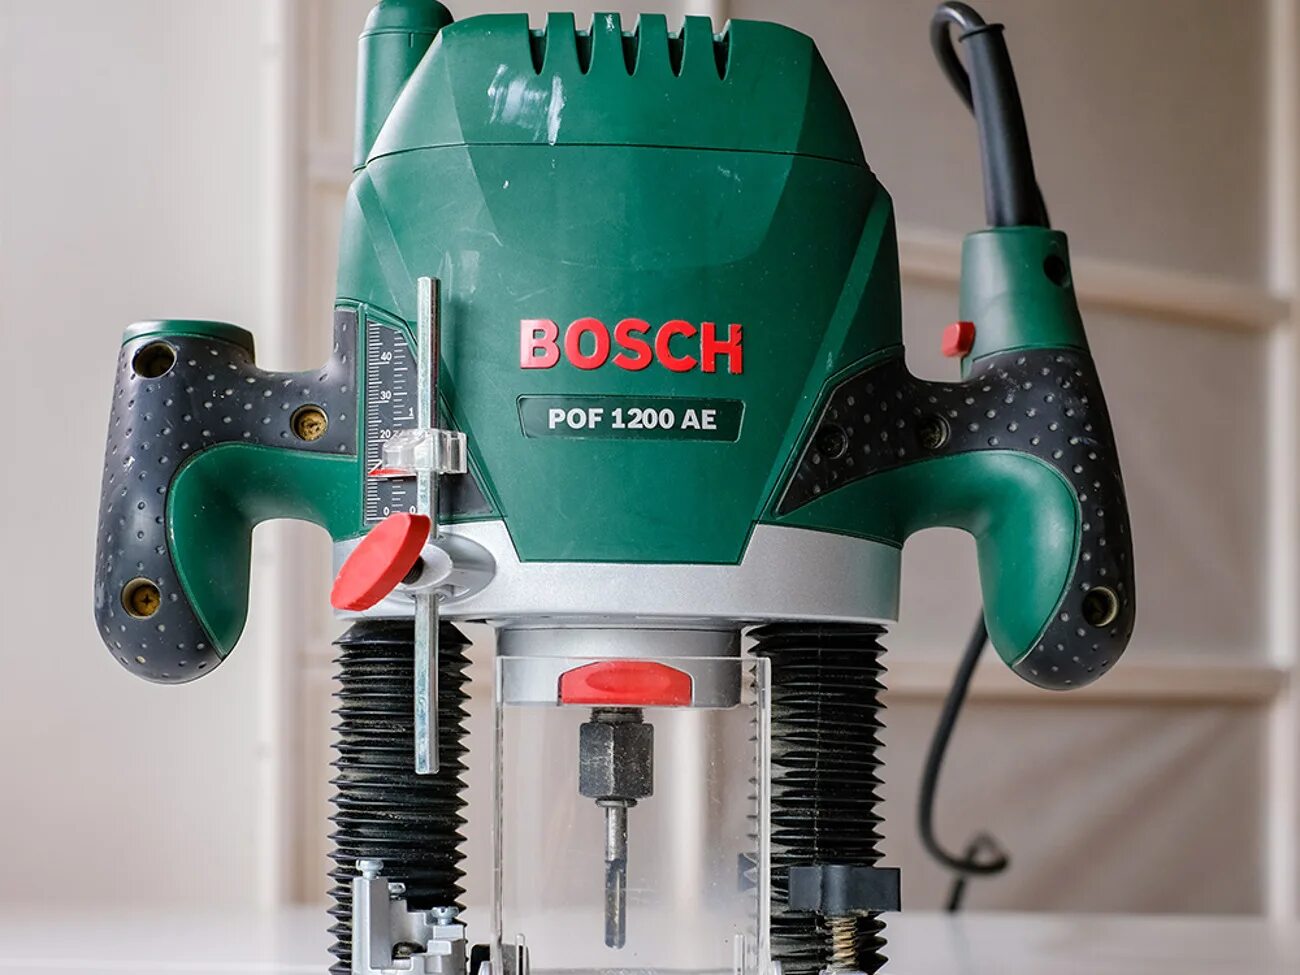 Бош 1200 купить. Bosch POF 1200 AE. Фрезерный станок Bosch POF 1200ae. Bosch 1200 AE комплектация. Фрейзер бош 1200 ае.